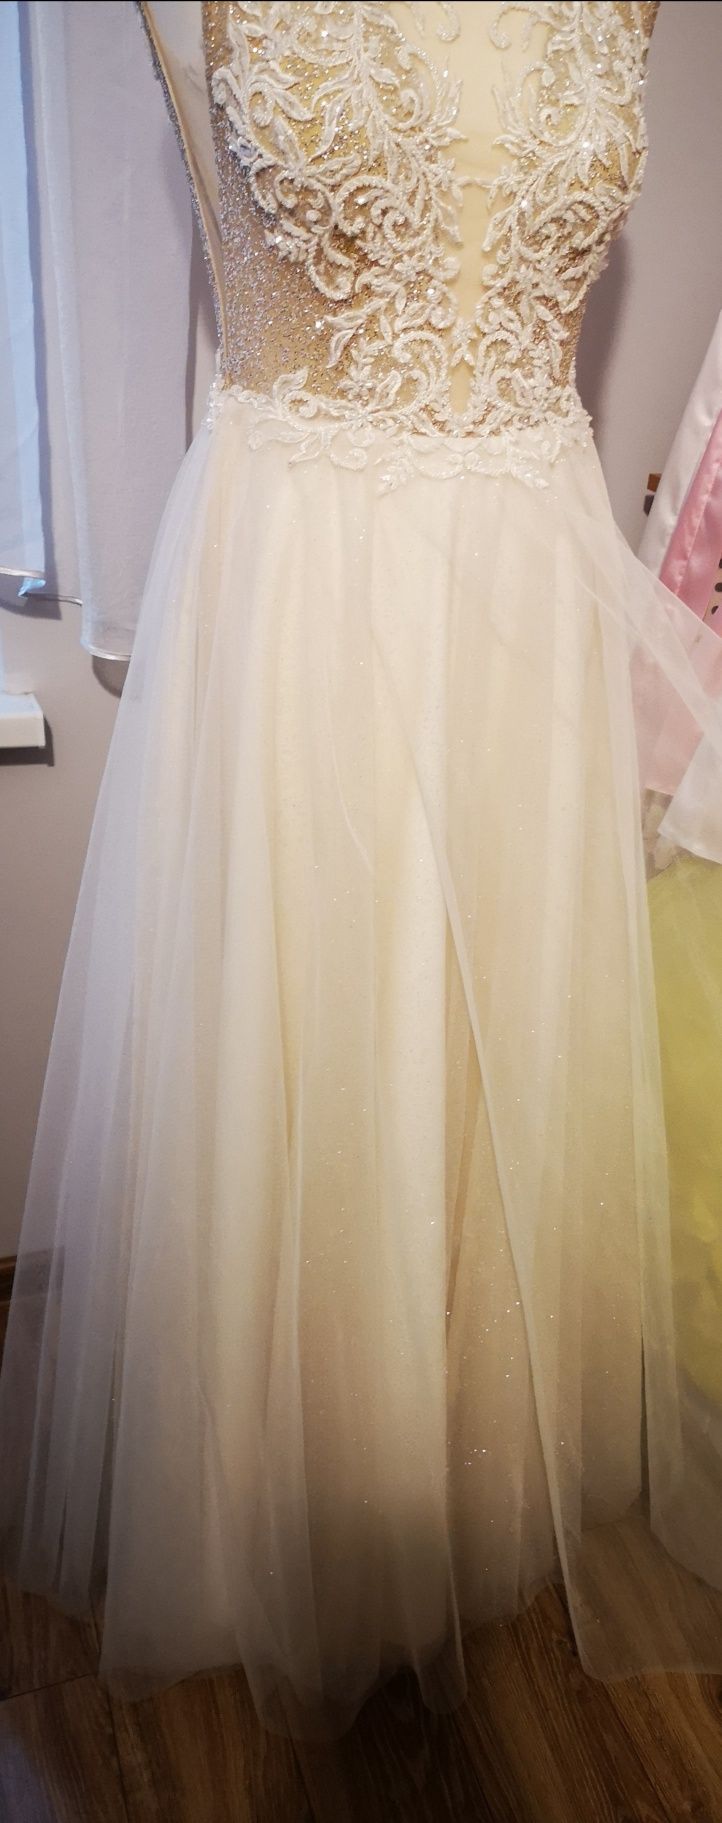 Suknia ślubna w kolorze ecru